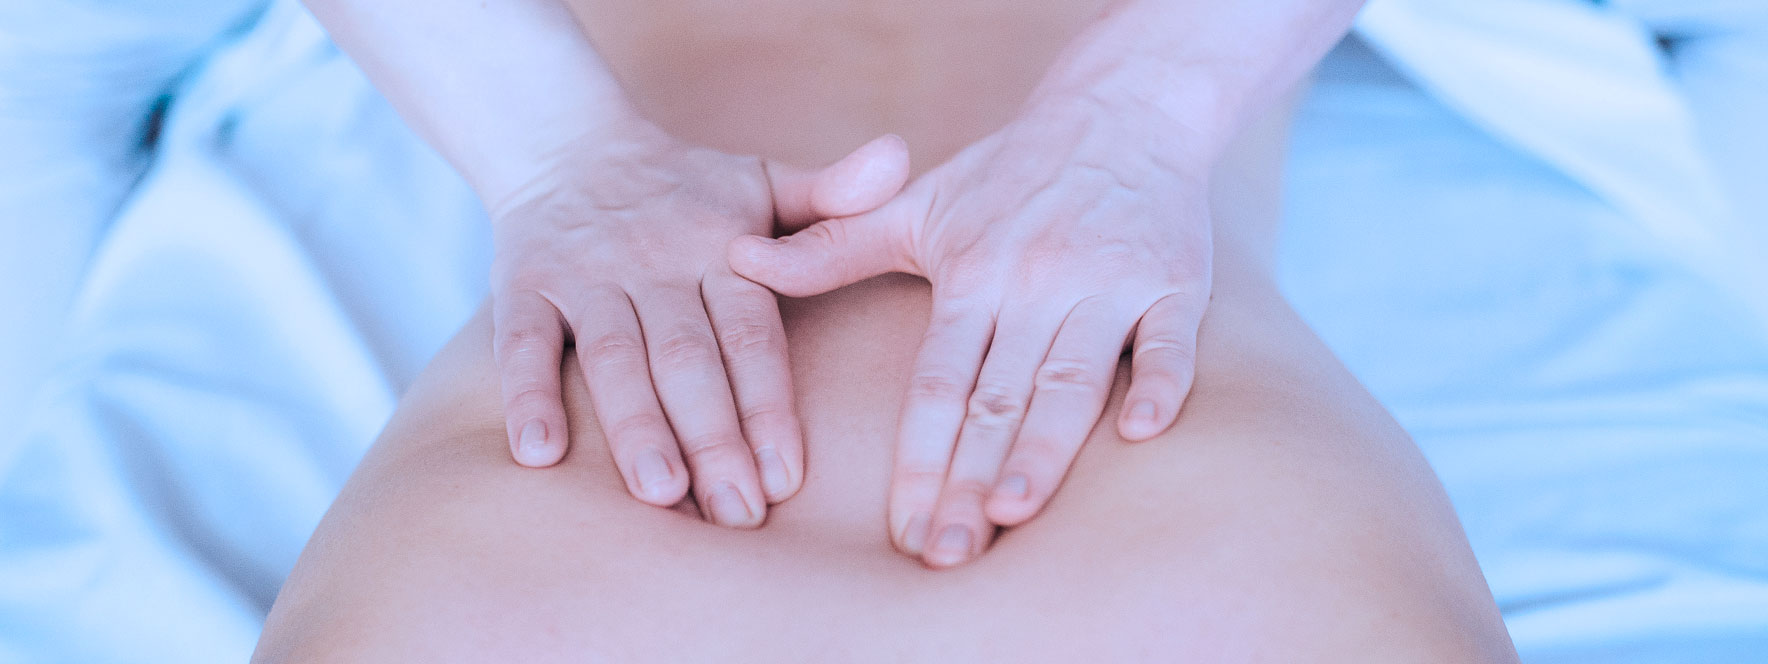 Conserver les effets après un massage antistress | Blogue du Réseau